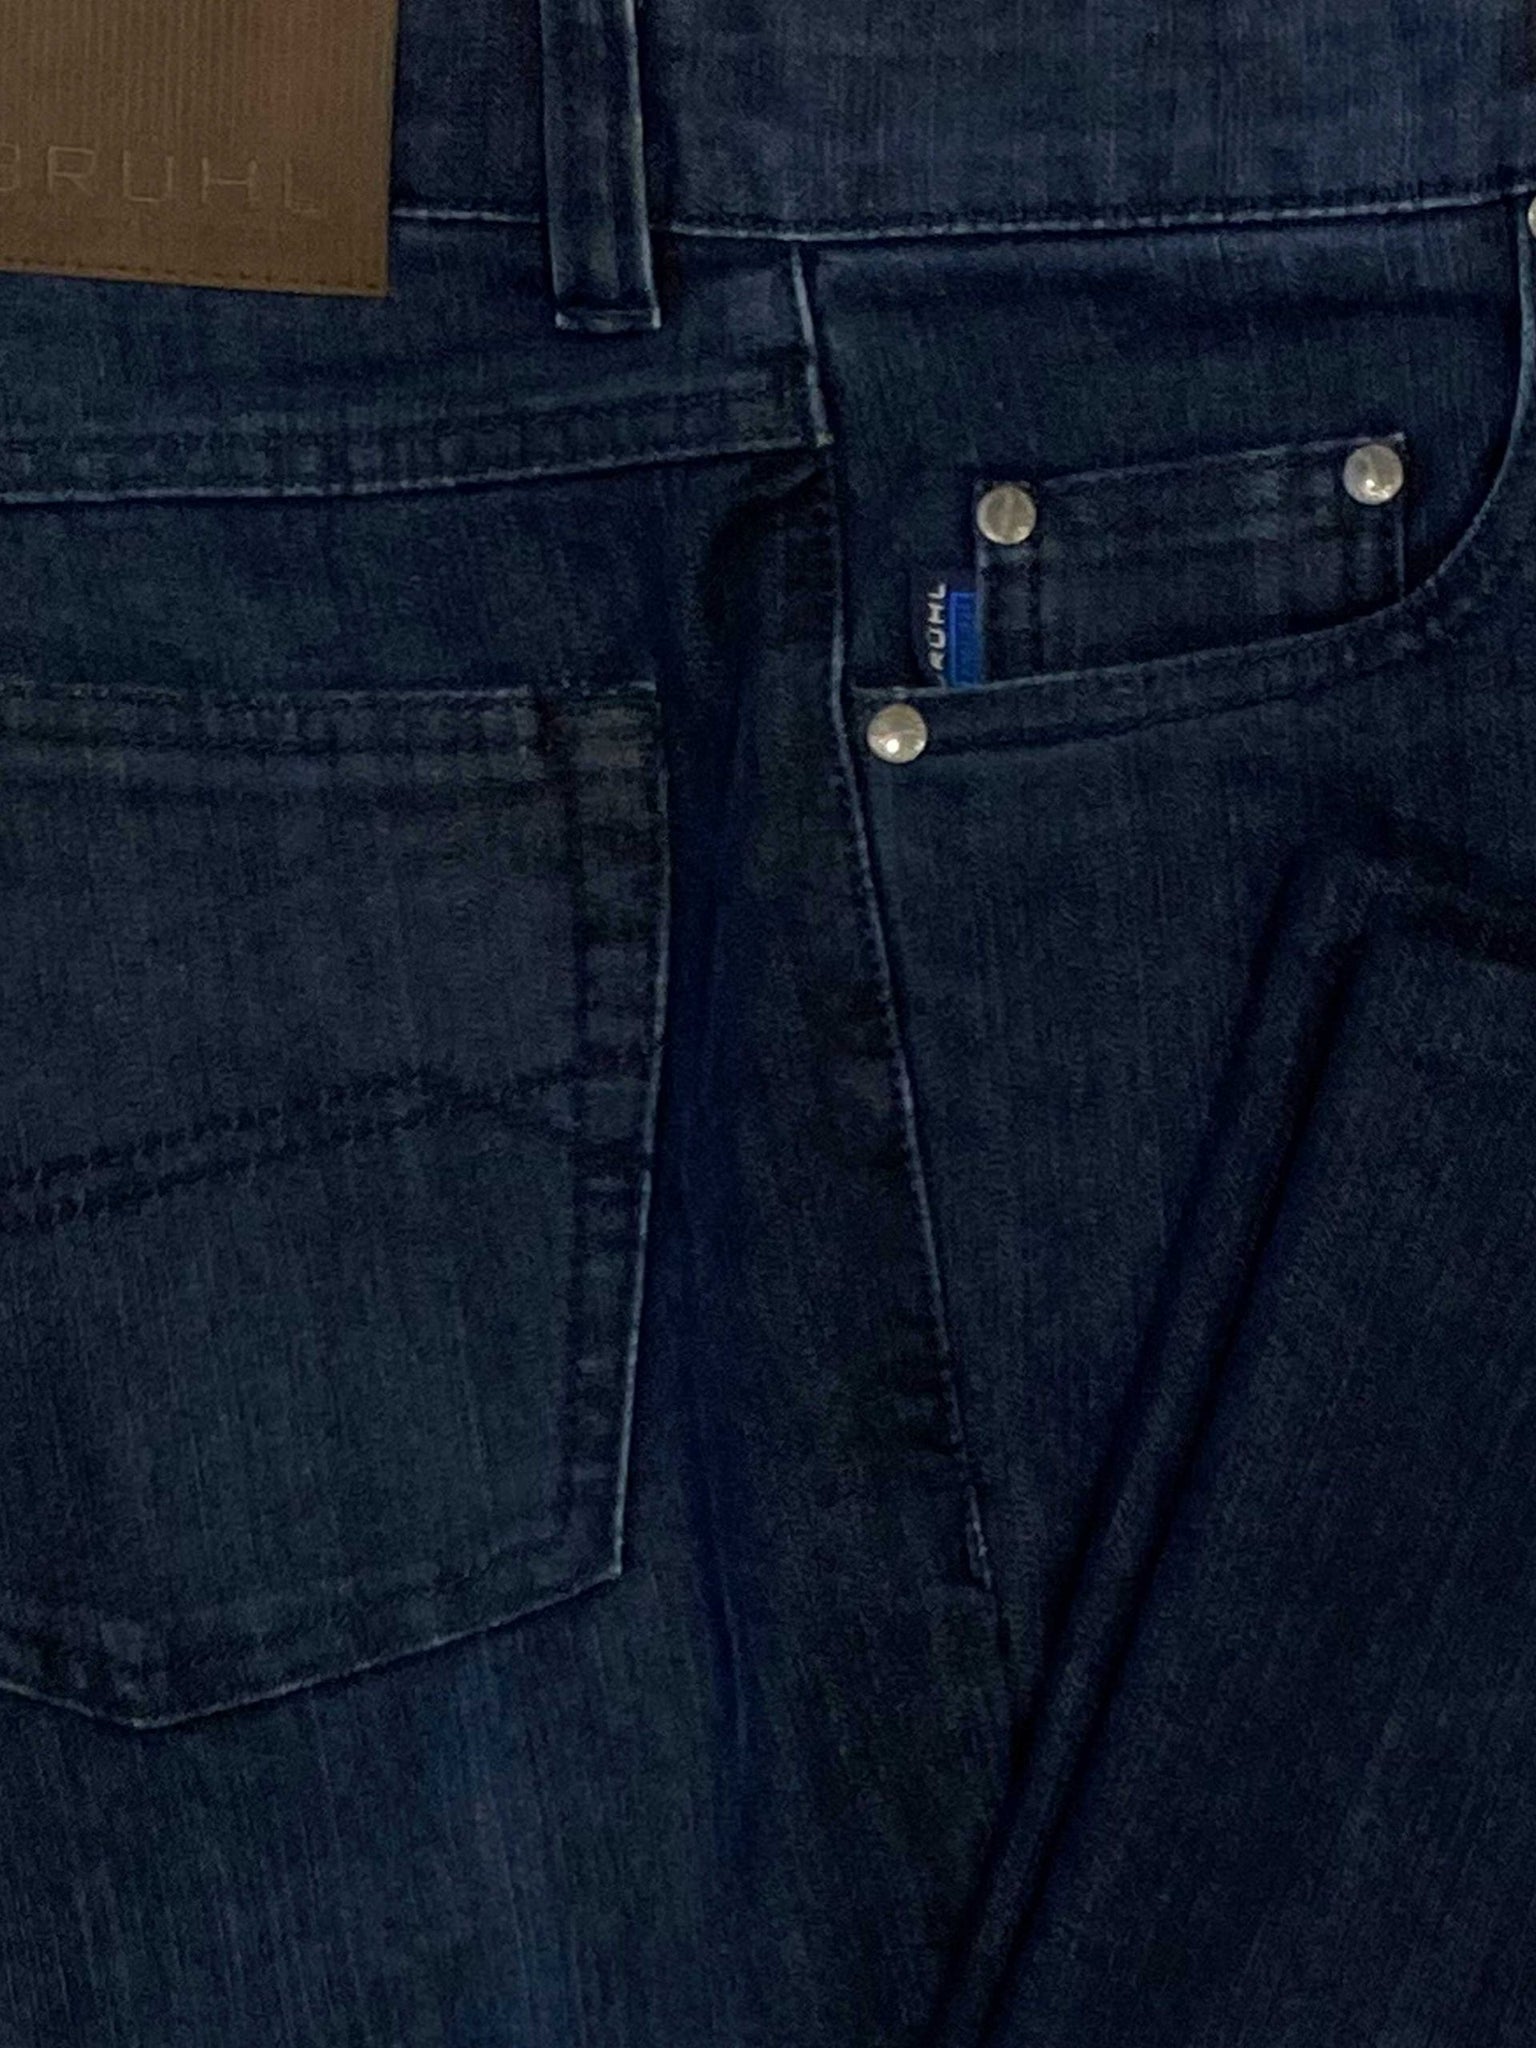 BRUHL Jeans - Harry Stretch Denim Regular Fit - Dark Blue – A Farley ...